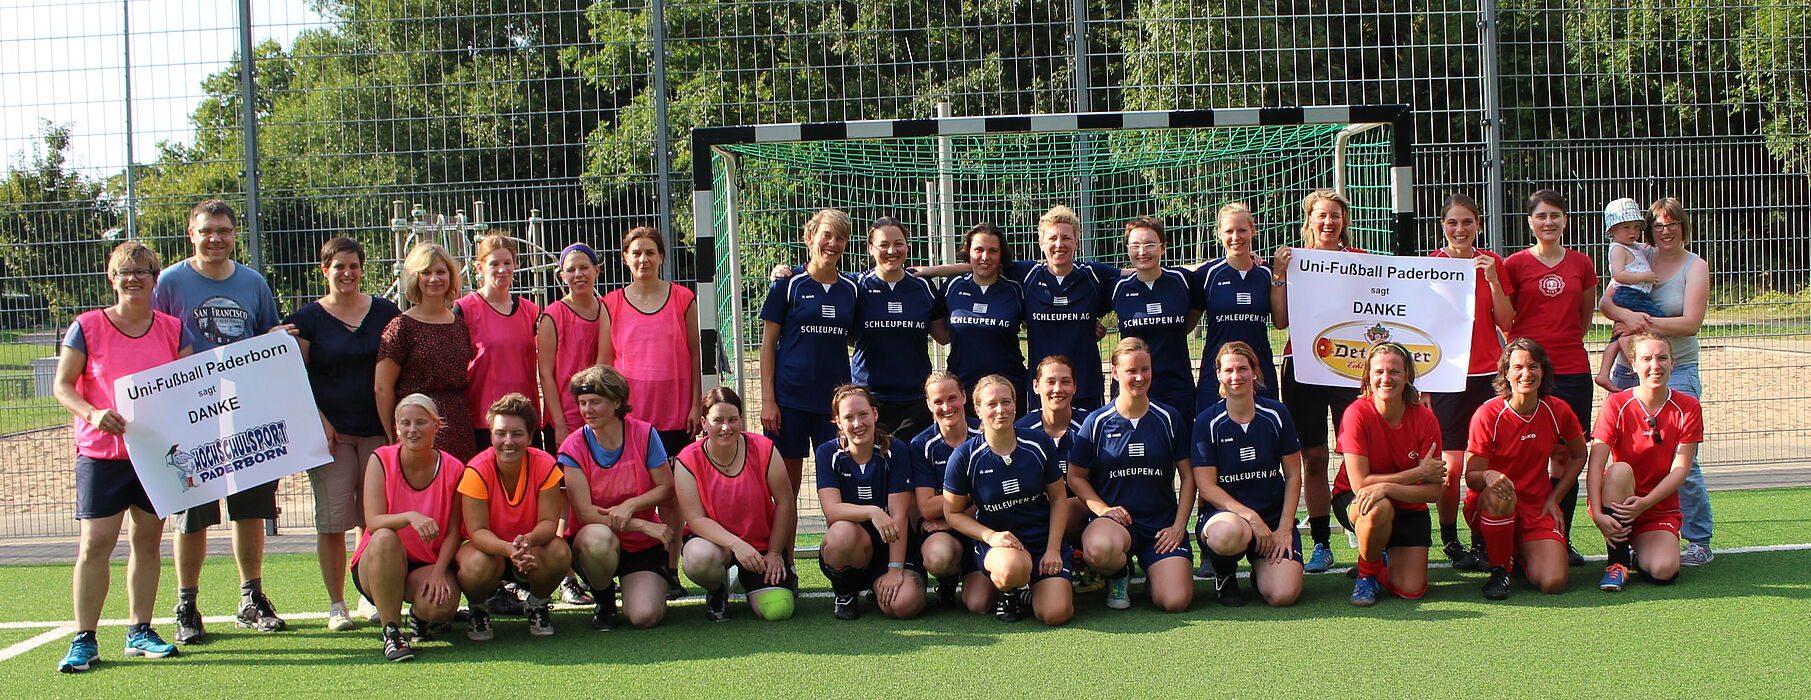 Foto (privat): Die aktuellen und ehemaligen Spielerinnen der Frauenfußballmannschaft des Paderborner Hochschulsports beim Jubiläumsturnier zum 20-jährigen Bestehen.